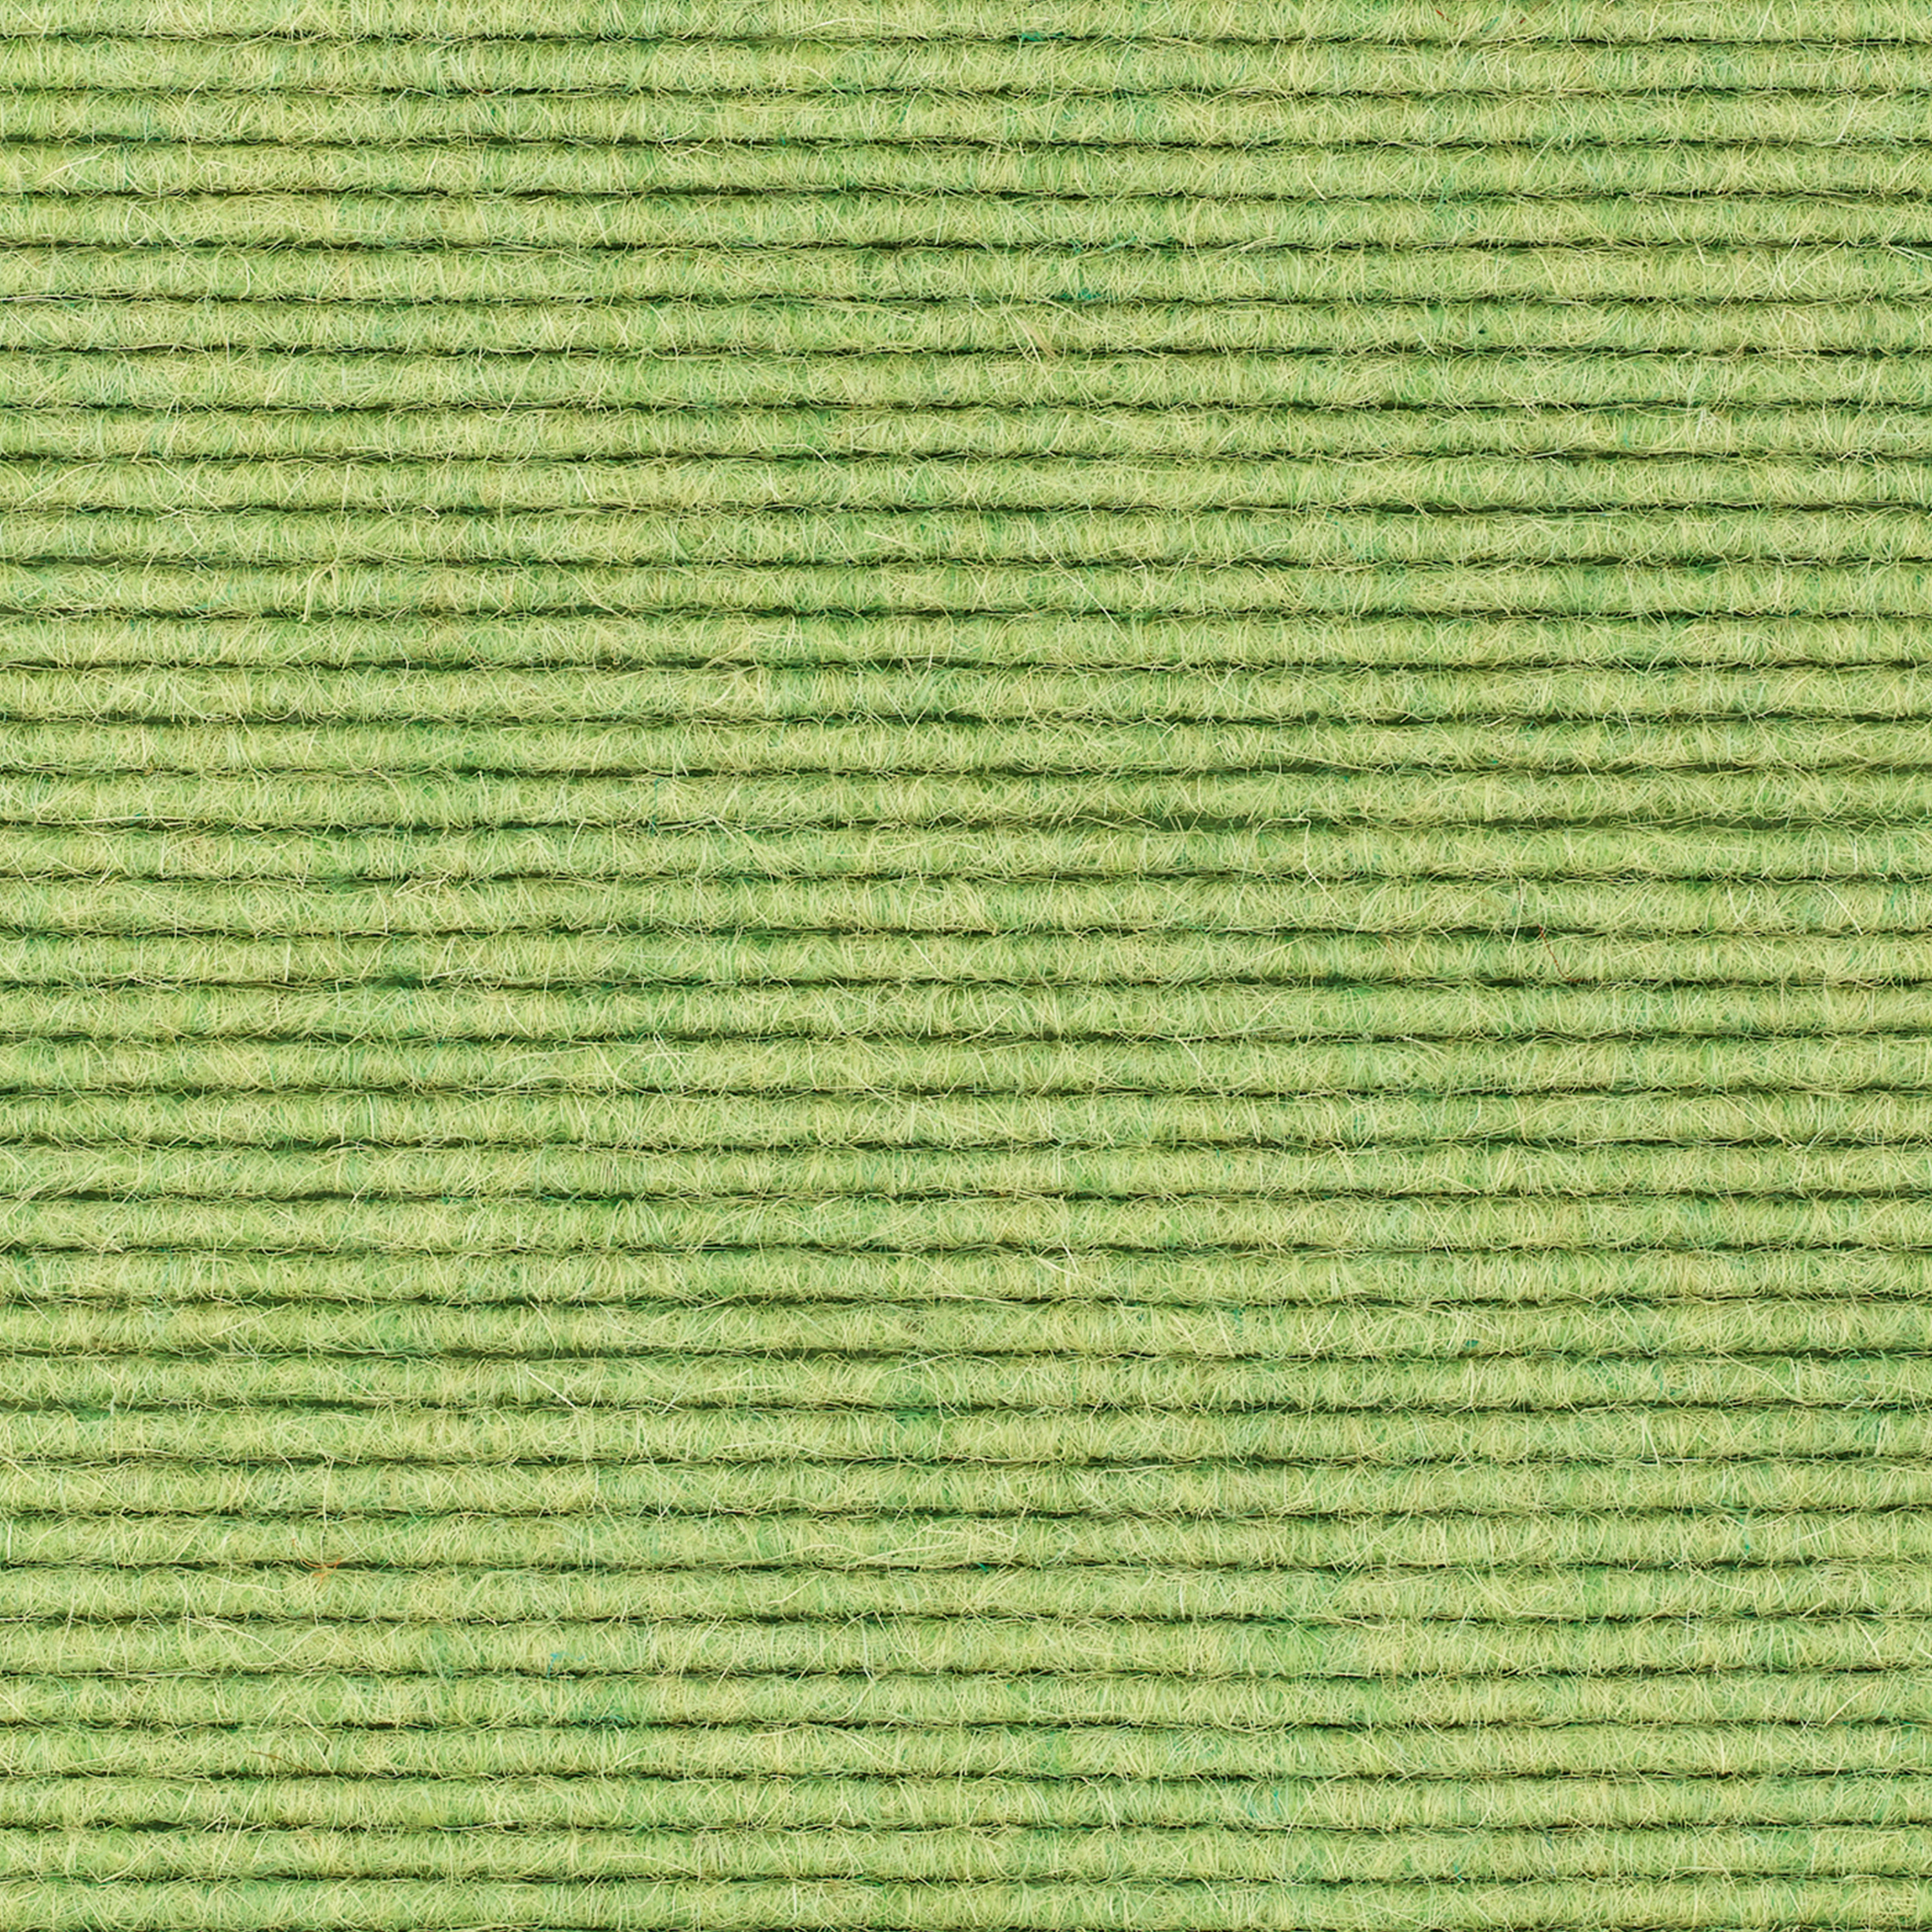 tretford-Teppich 'Wasabi (622)', 3 x 2 m, ungekettelt